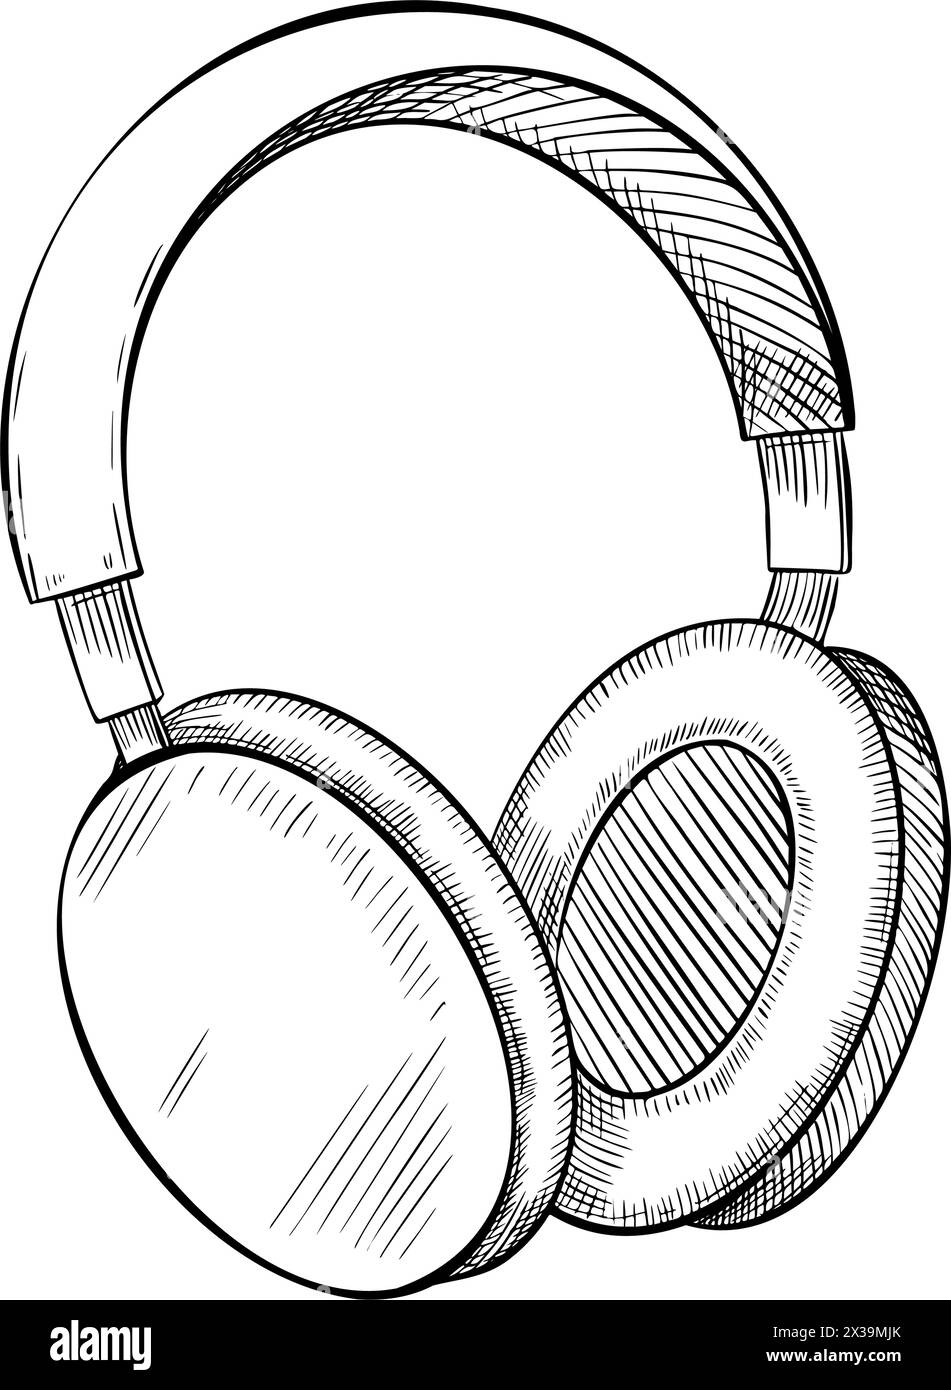 Vektorabbildung von Kopfhörern. Zeichnung des Kopfhörers auf isoliertem Hintergrund. Gravur des Headsets für Symbol oder Logo im linearen Stil. Skizze des Ohrhörers für Musik während des Sporttrainings. Stock Vektor